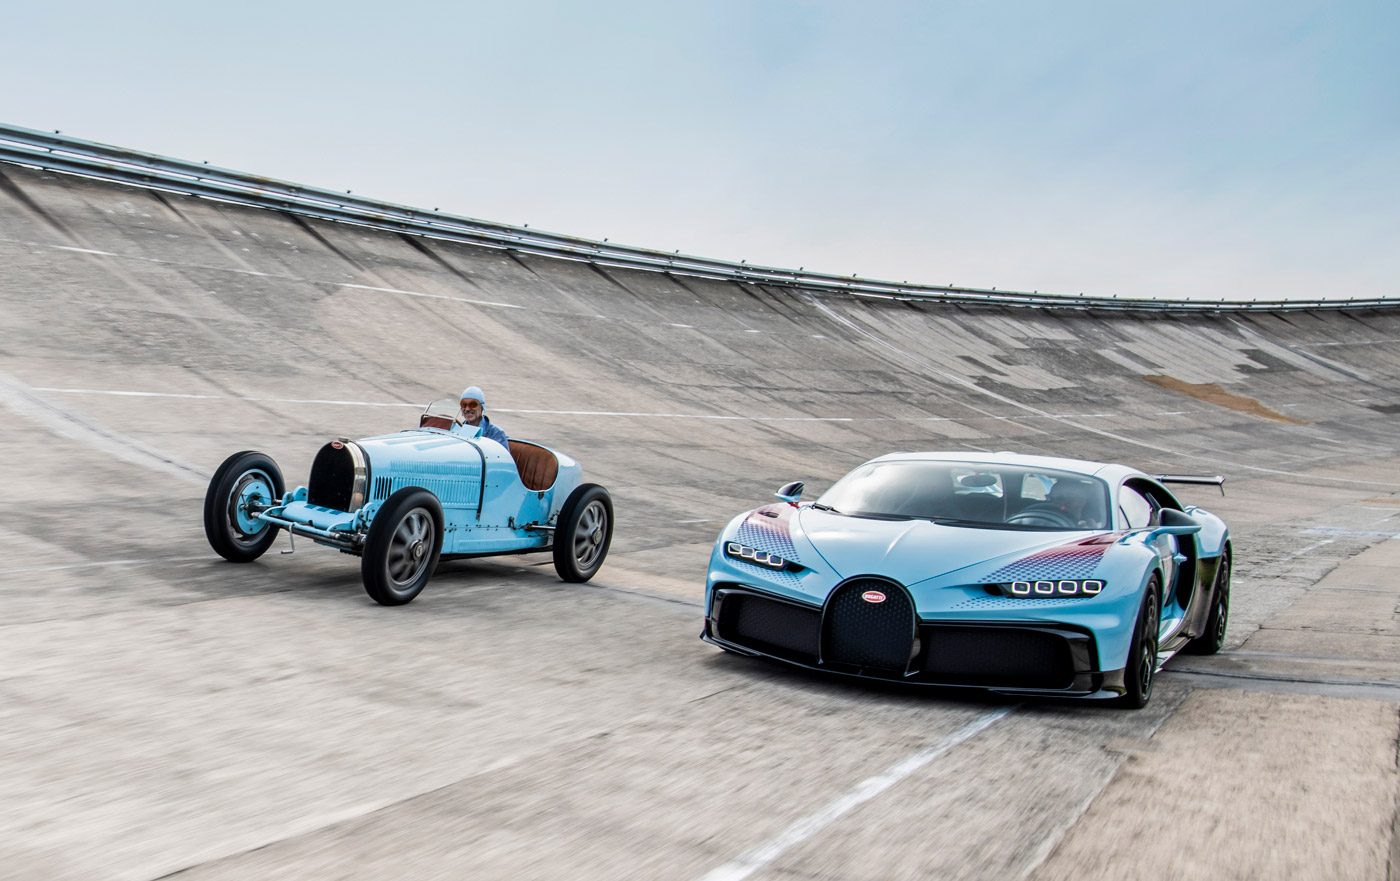 Kind Omtrek Gewoon overlopen Je kunt officieel geen nieuwe Bugatti meer kopen - Autoblog.nl